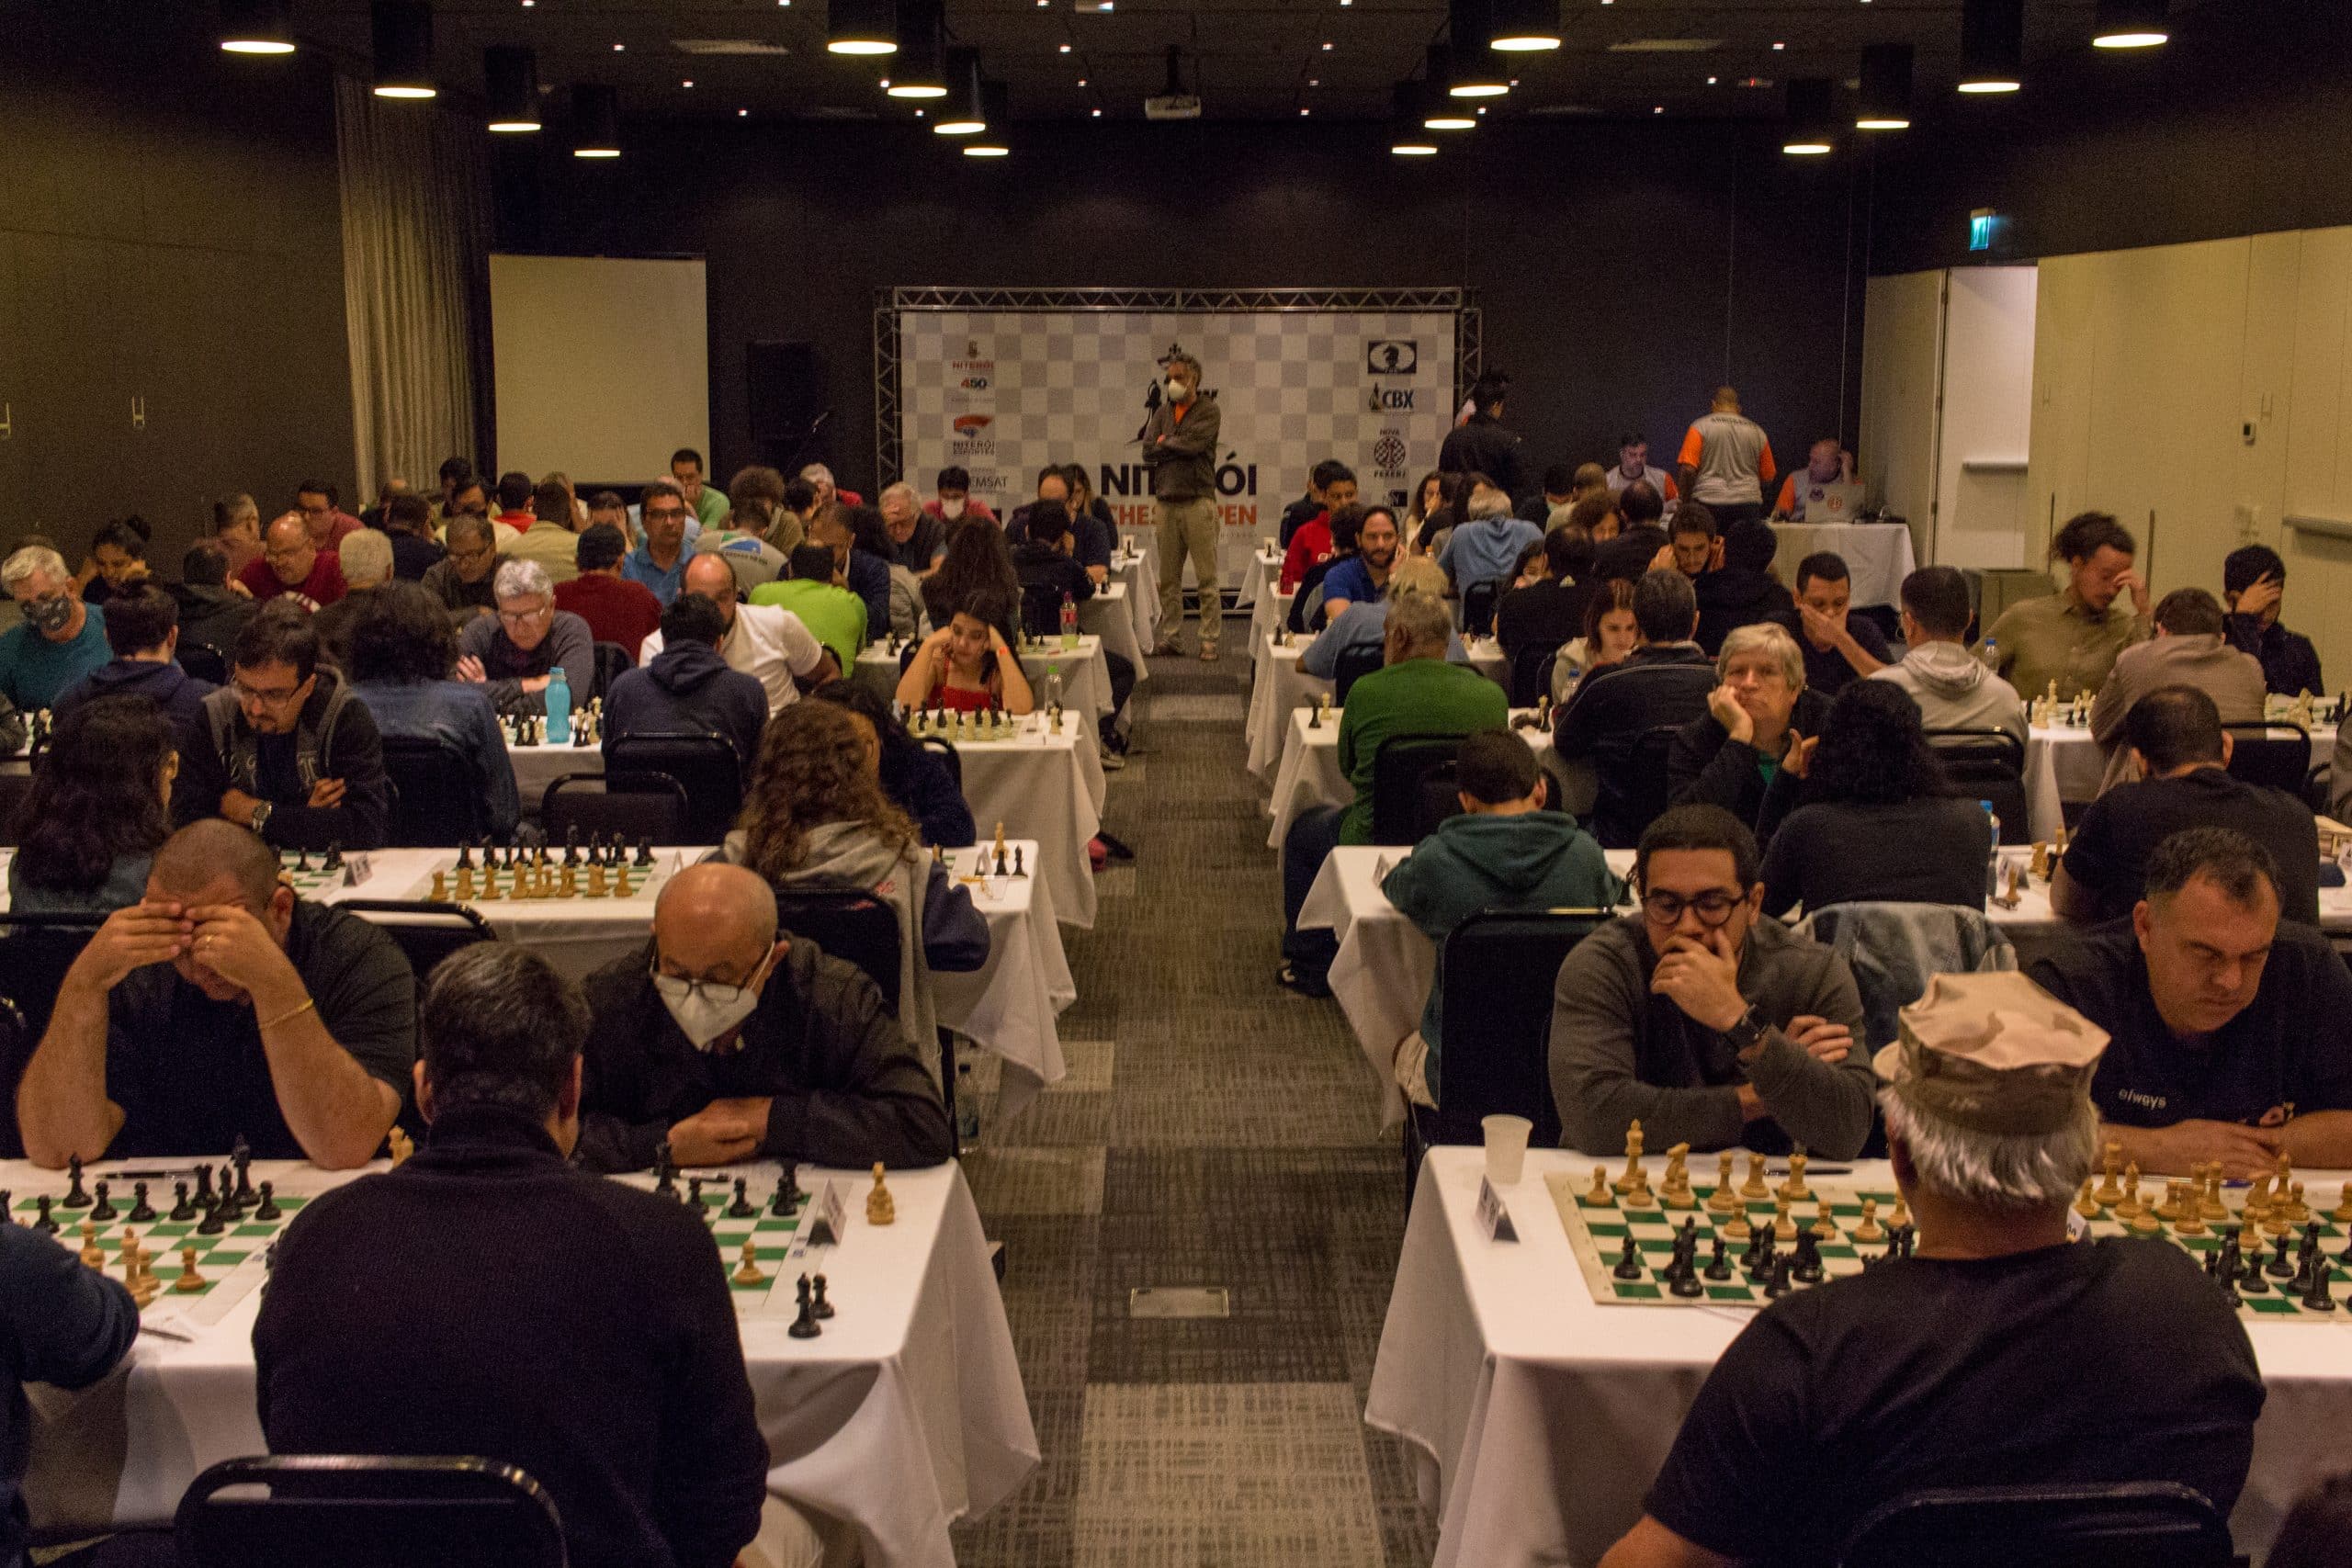 Niterói Chess Open será realizado até domingo (10), no H Niterói